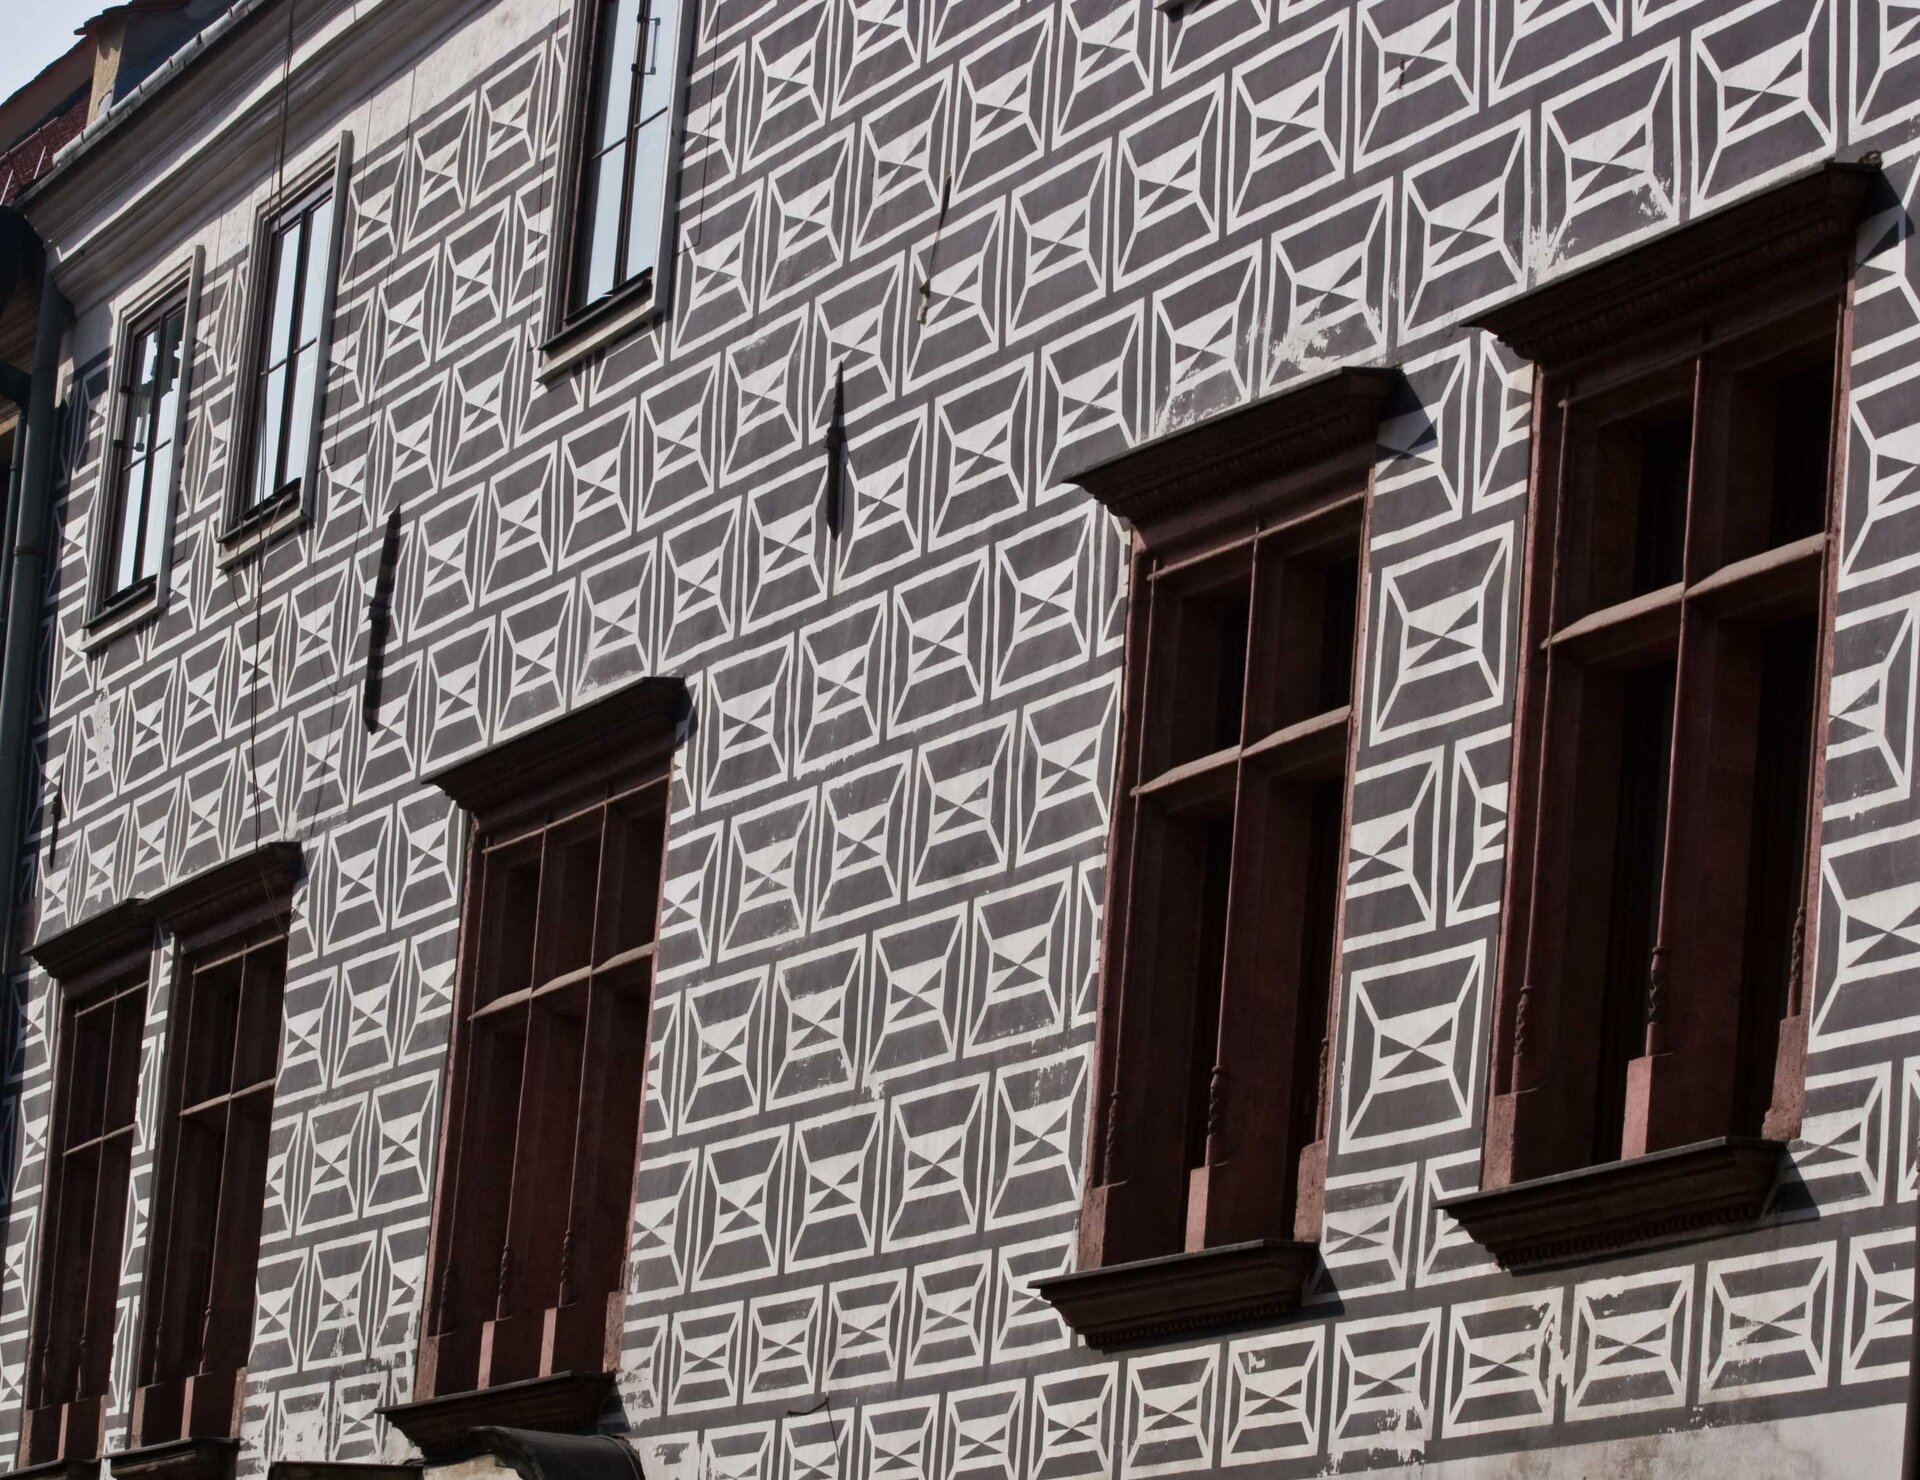 Ilustracja przedstawia sgraffito wykonane na fasadzie budynku. Dekoracja imituje renesansowe okładziny kamienne w kolorze jasnoszarym na ciemnoszarym tle.